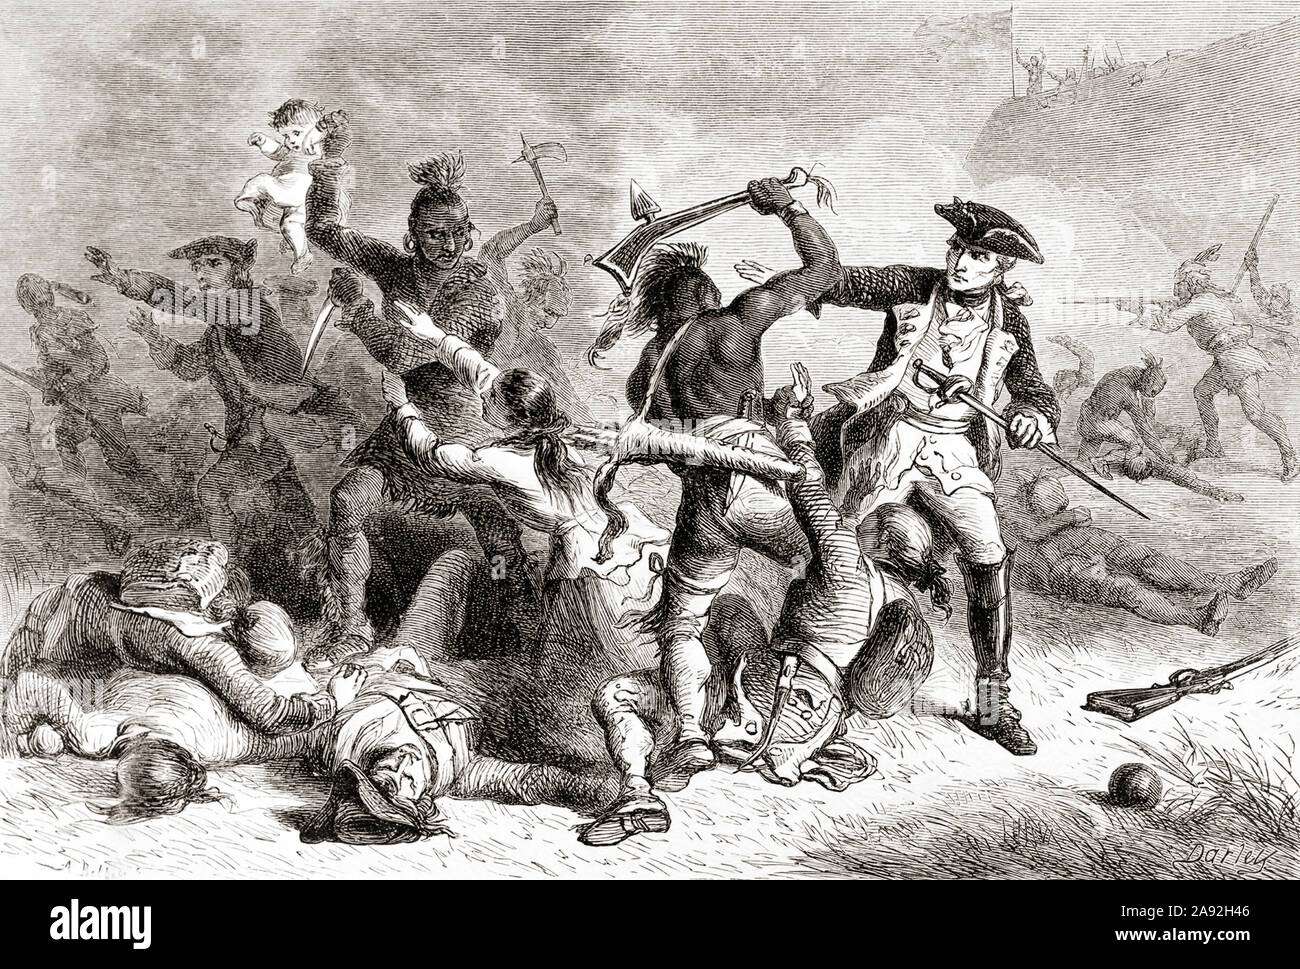 Le général français Louis-Joseph de Montcalm, 1712 -1759. Ici vu essayer d'arrêter ses alliés autochtones américaines de tuer des soldats britanniques et des civils qui s'étaient rendus après la bataille de Fort William Henry pendant la guerre de Sept Ans, 1754 - 1763. Banque D'Images